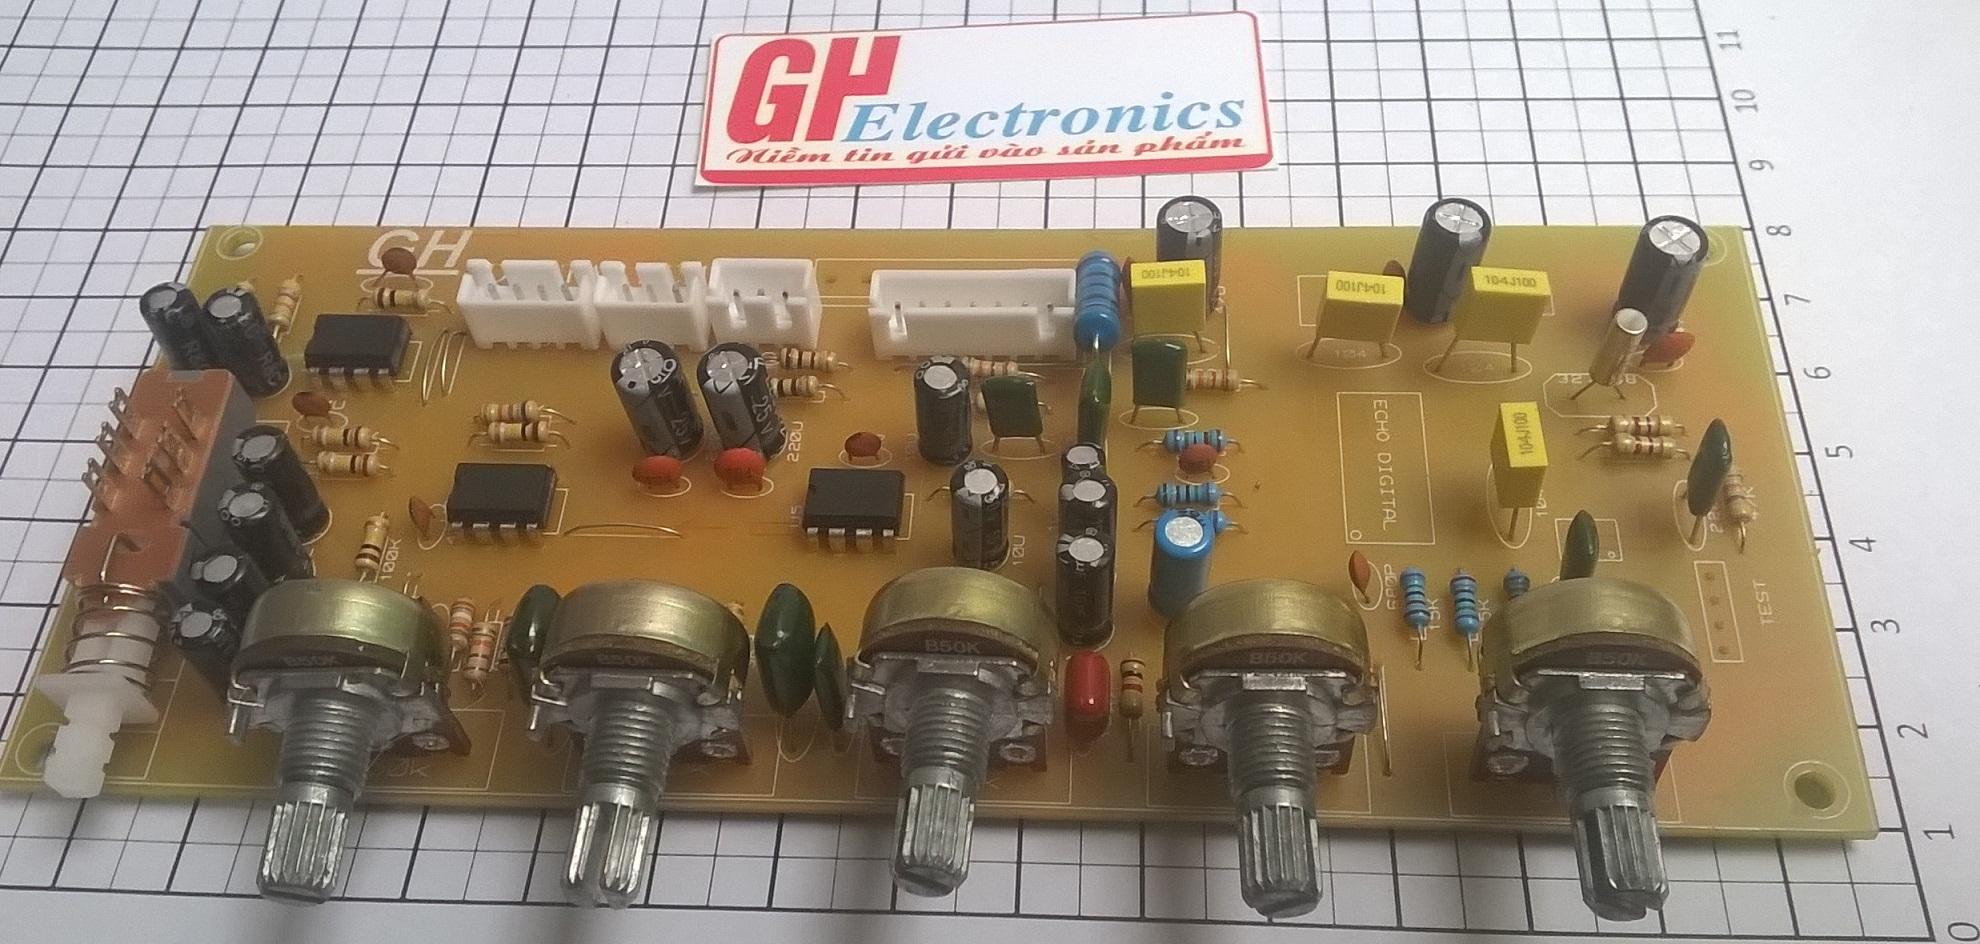 Bo mạch Echo kĩ thuật số GH Electronics v1.02